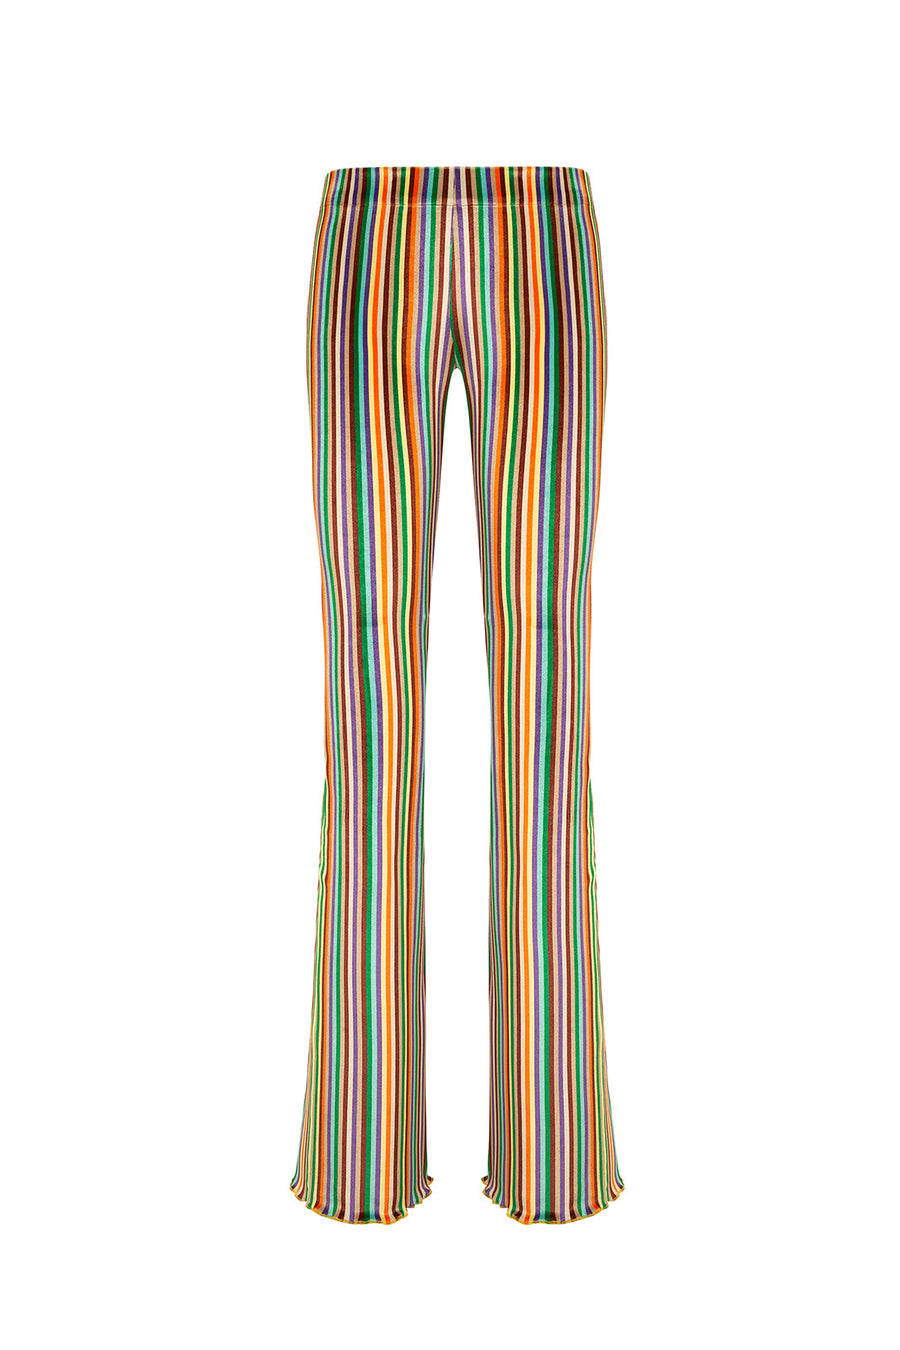 FLO - Multi-color striped pants